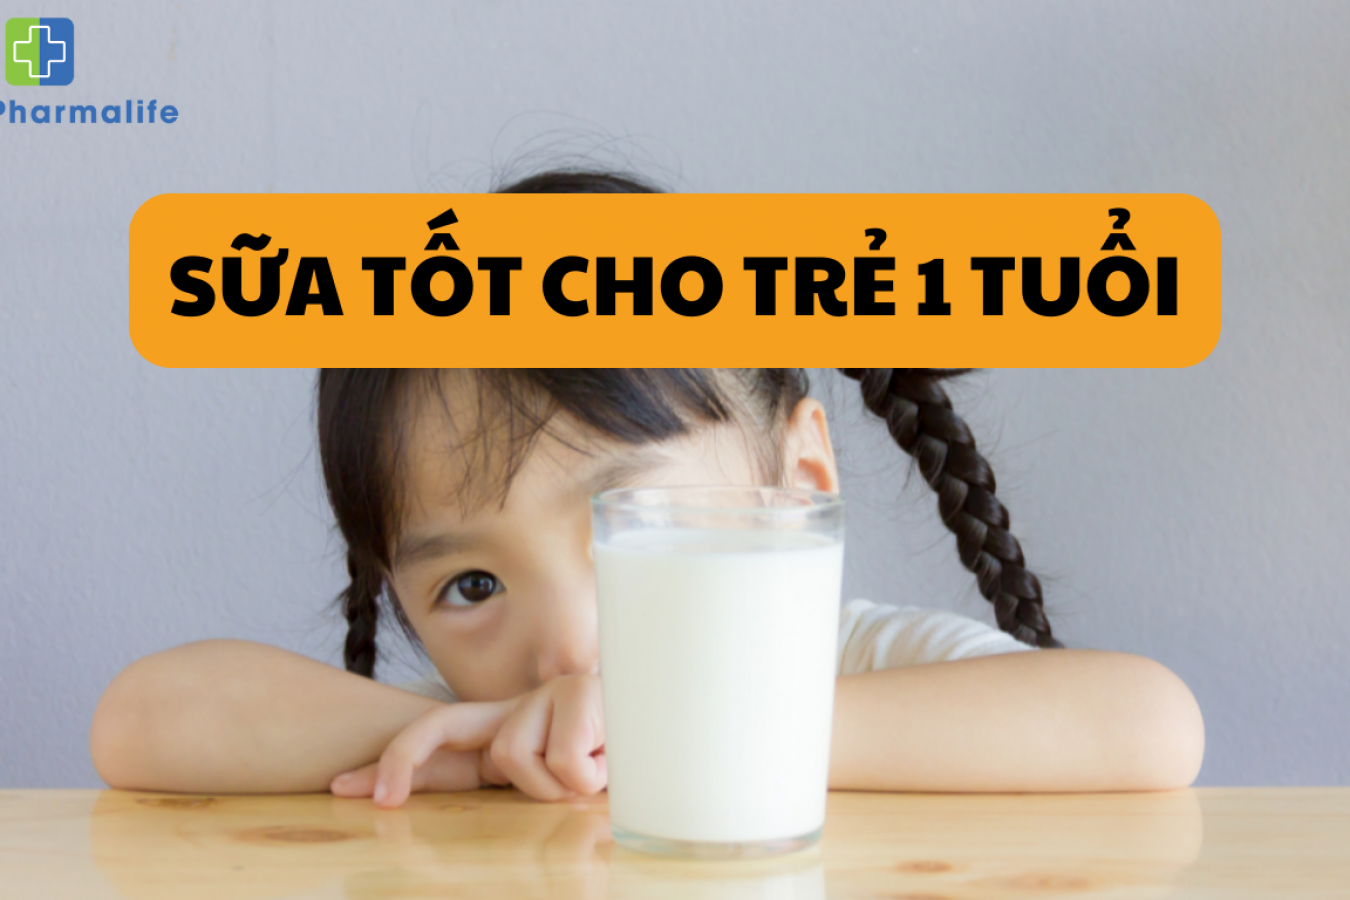 TOP 7 dòng sữa tốt cho trẻ 1 tuổi giúp phát triển toàn diện